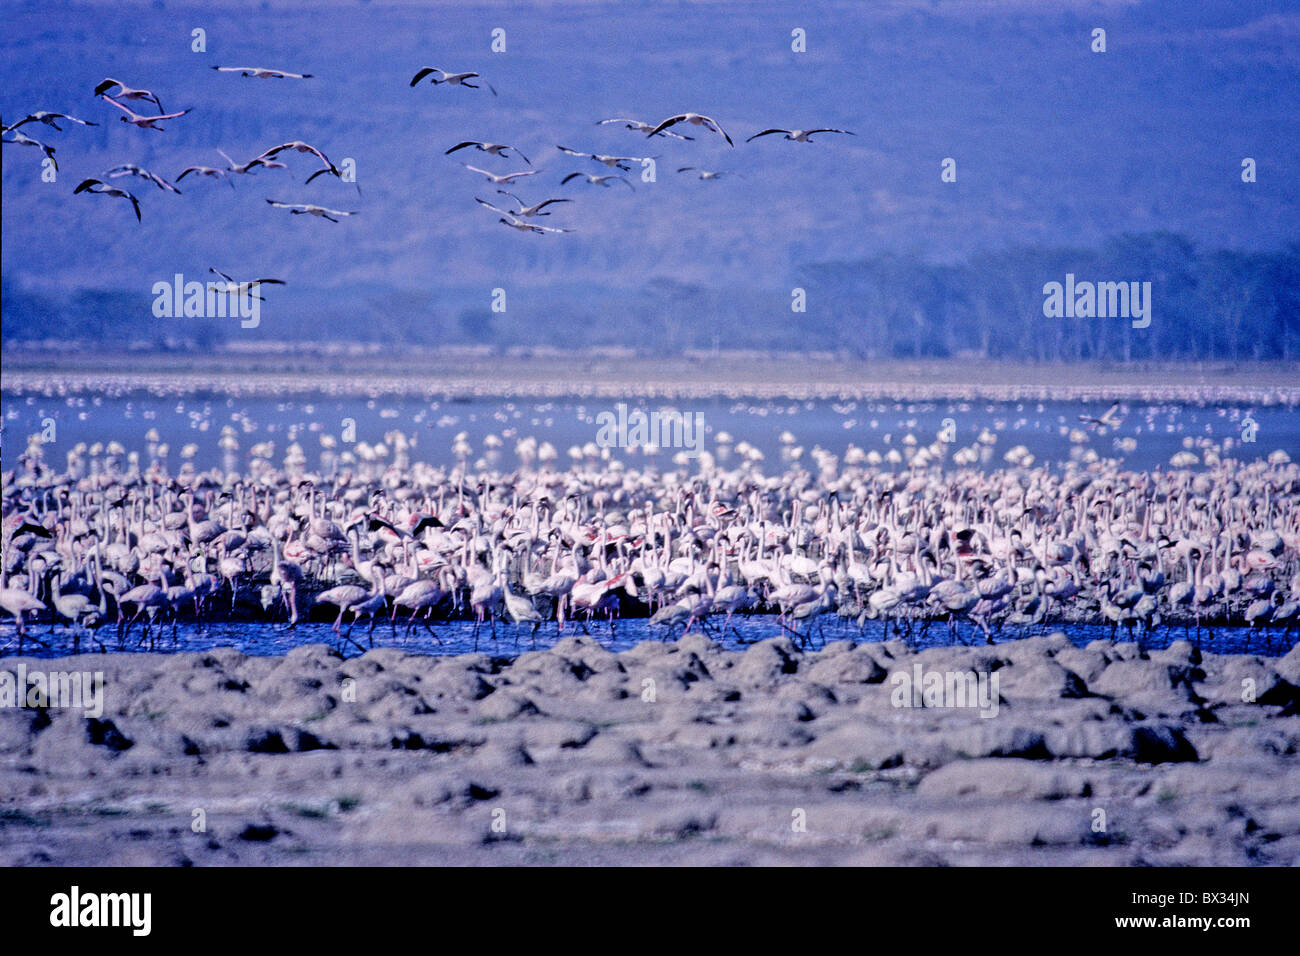 Flamant nain Phoeniconaias minor colonie flamingo flamingo Le lac Nakuru Kenya Afrique animaux oiseaux animaux Banque D'Images